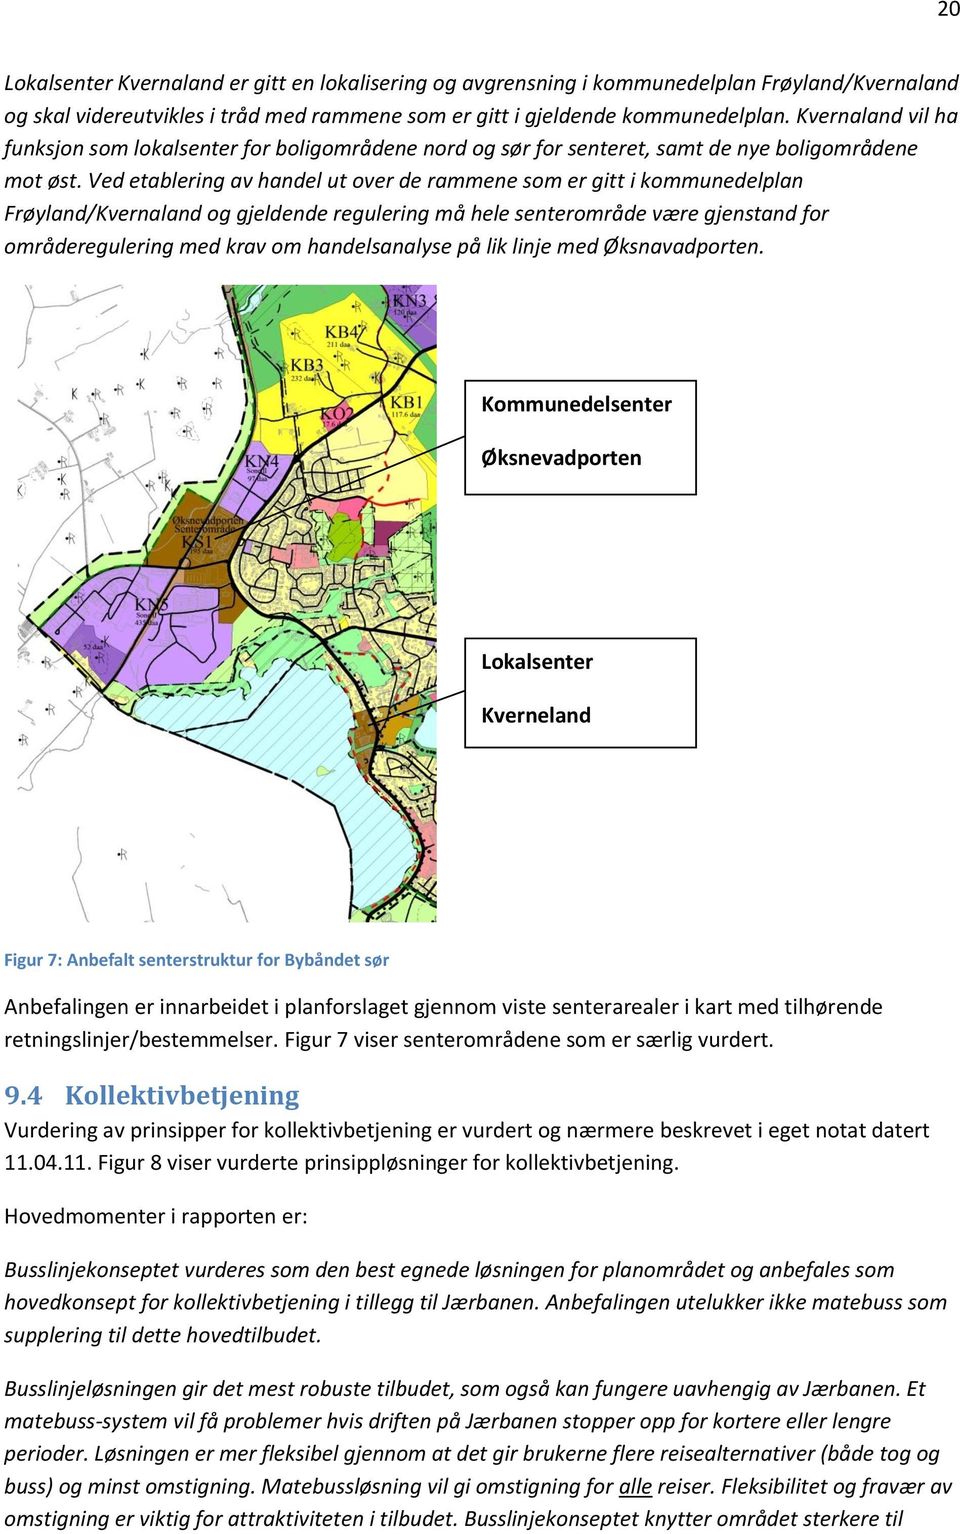 Ved etablering av handel ut over de rammene som er gitt i kommunedelplan Frøyland/Kvernaland og gjeldende regulering må hele senterområde være gjenstand for områderegulering med krav om